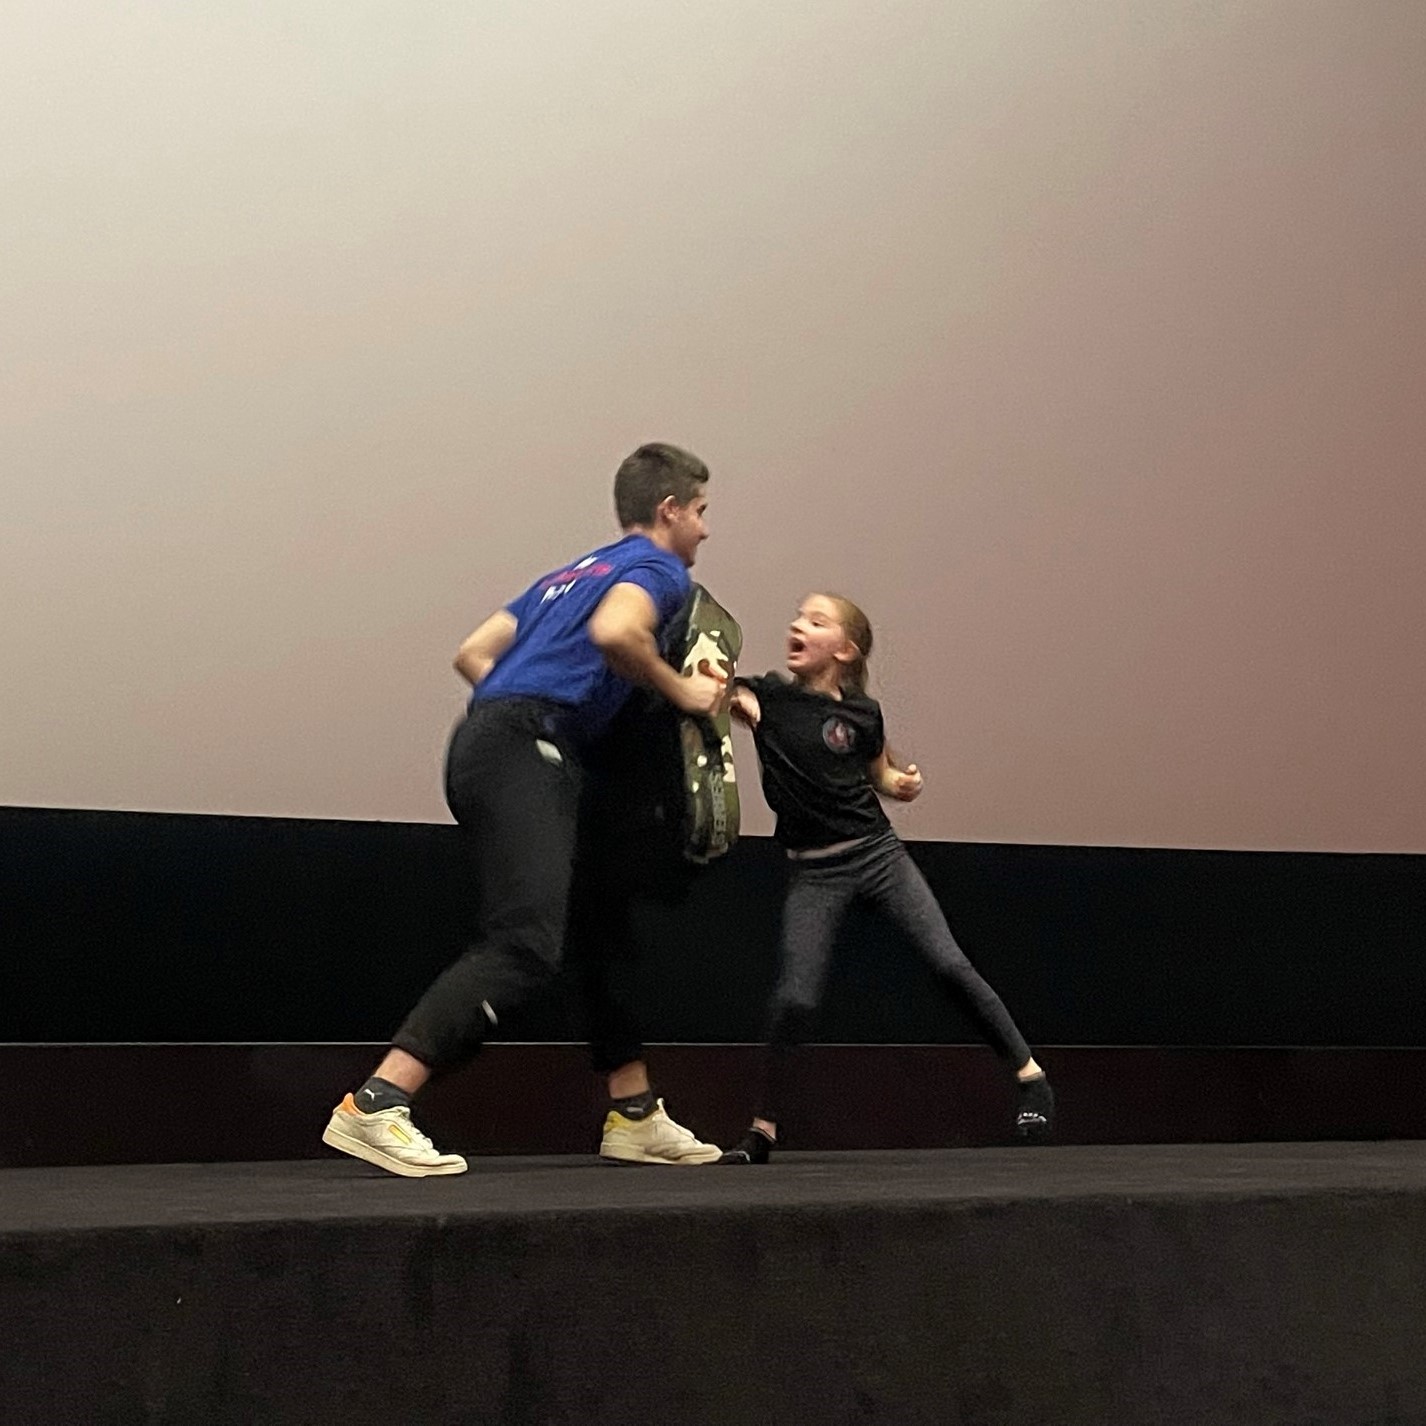 Sebeobrana pro ženy v Cinestar plzeň